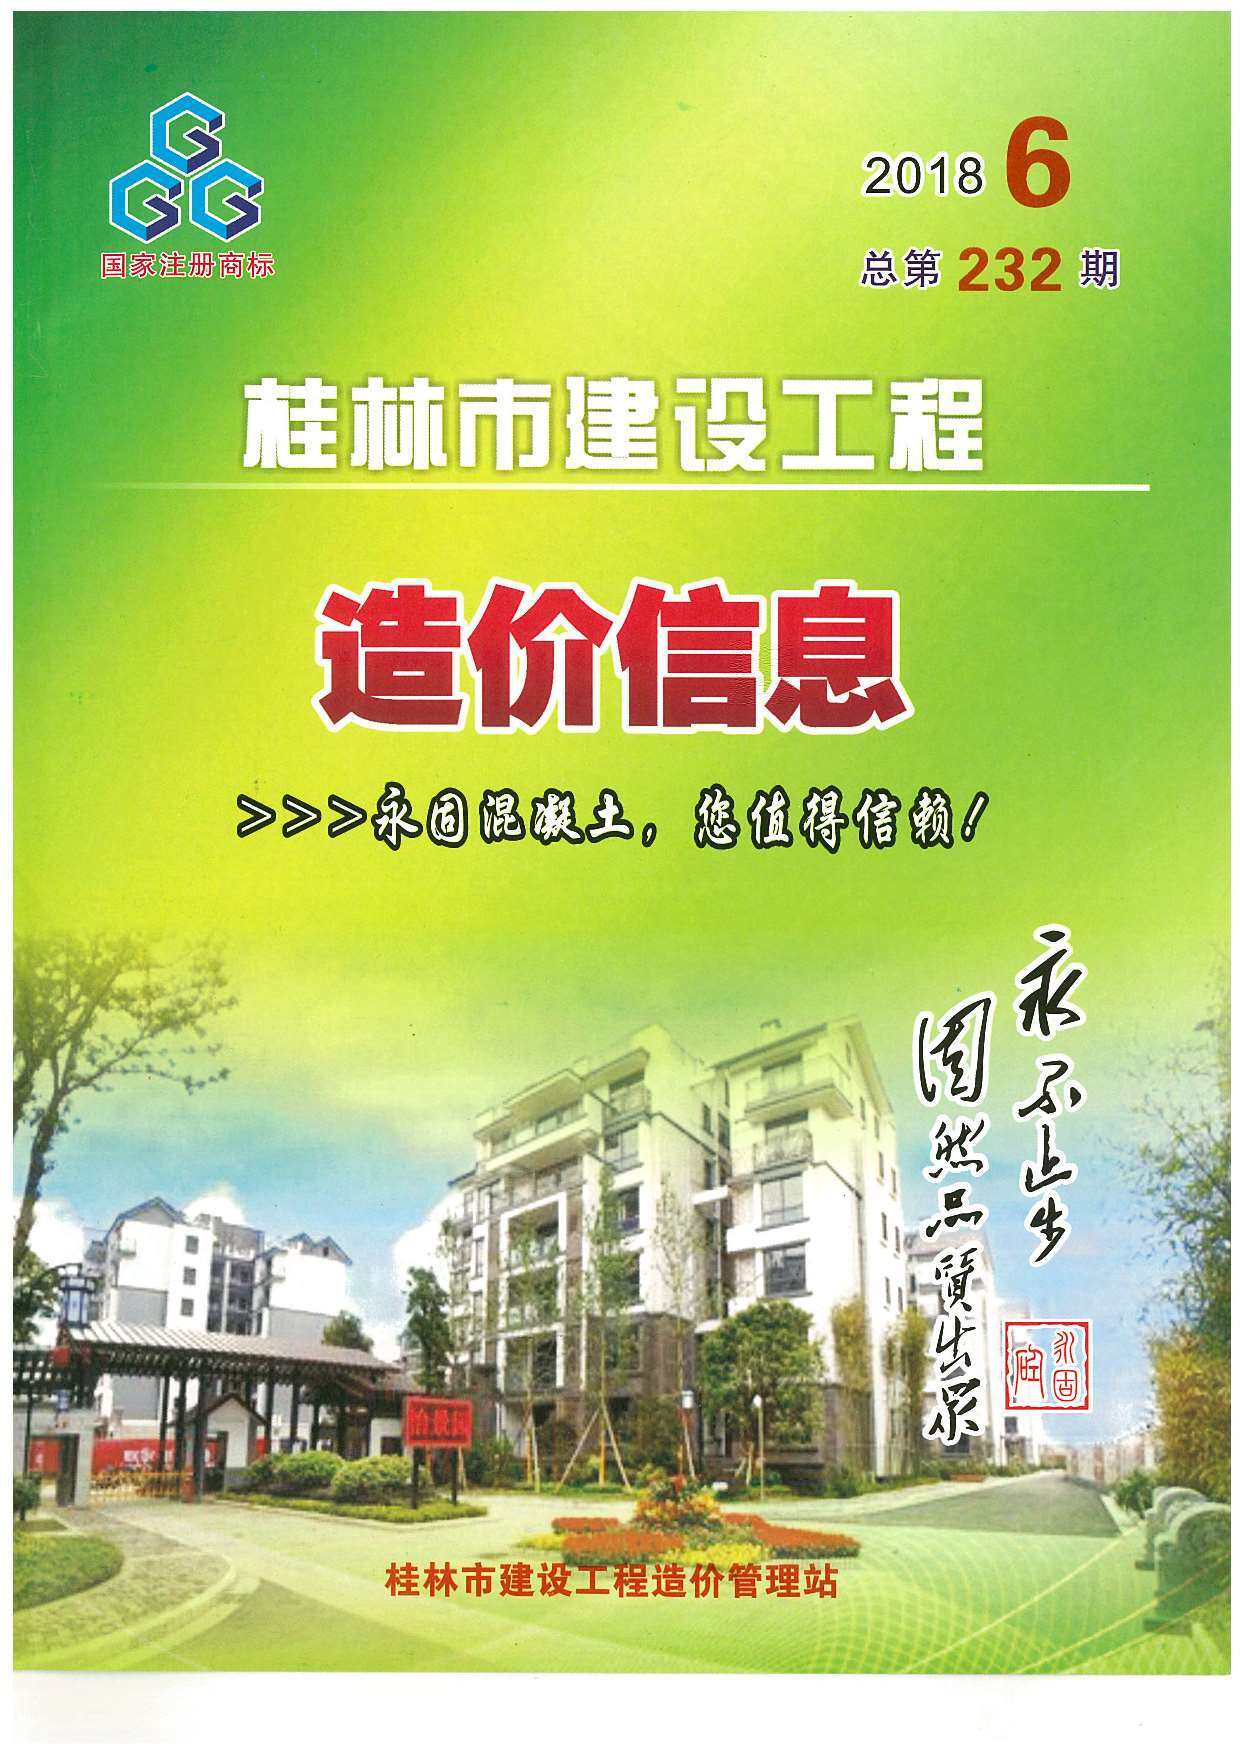 桂林市2018年6月工程造价信息期刊